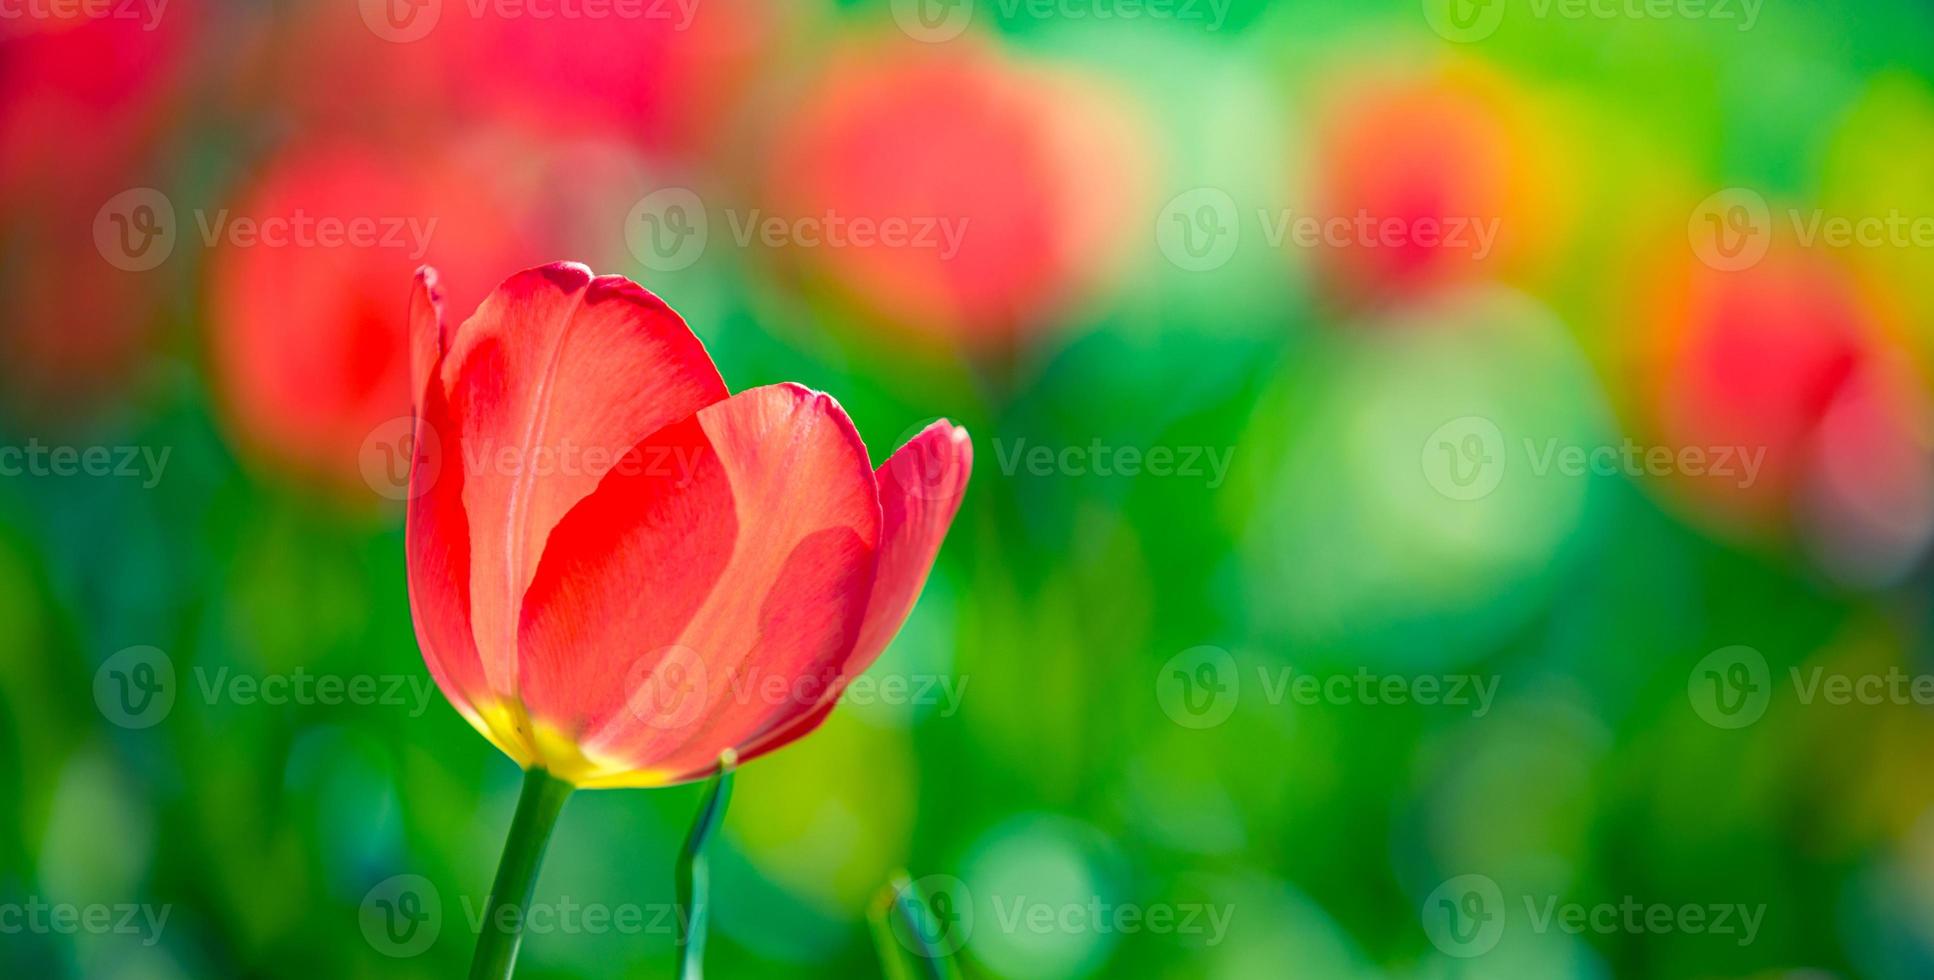 mooi eenzaam rood wit tulp in voorjaar natuur voor kaart ontwerp en web spandoek. sereen detailopname, idyllisch romantisch liefde bloemen natuur landschap. abstract wazig weelderig gebladerte foto